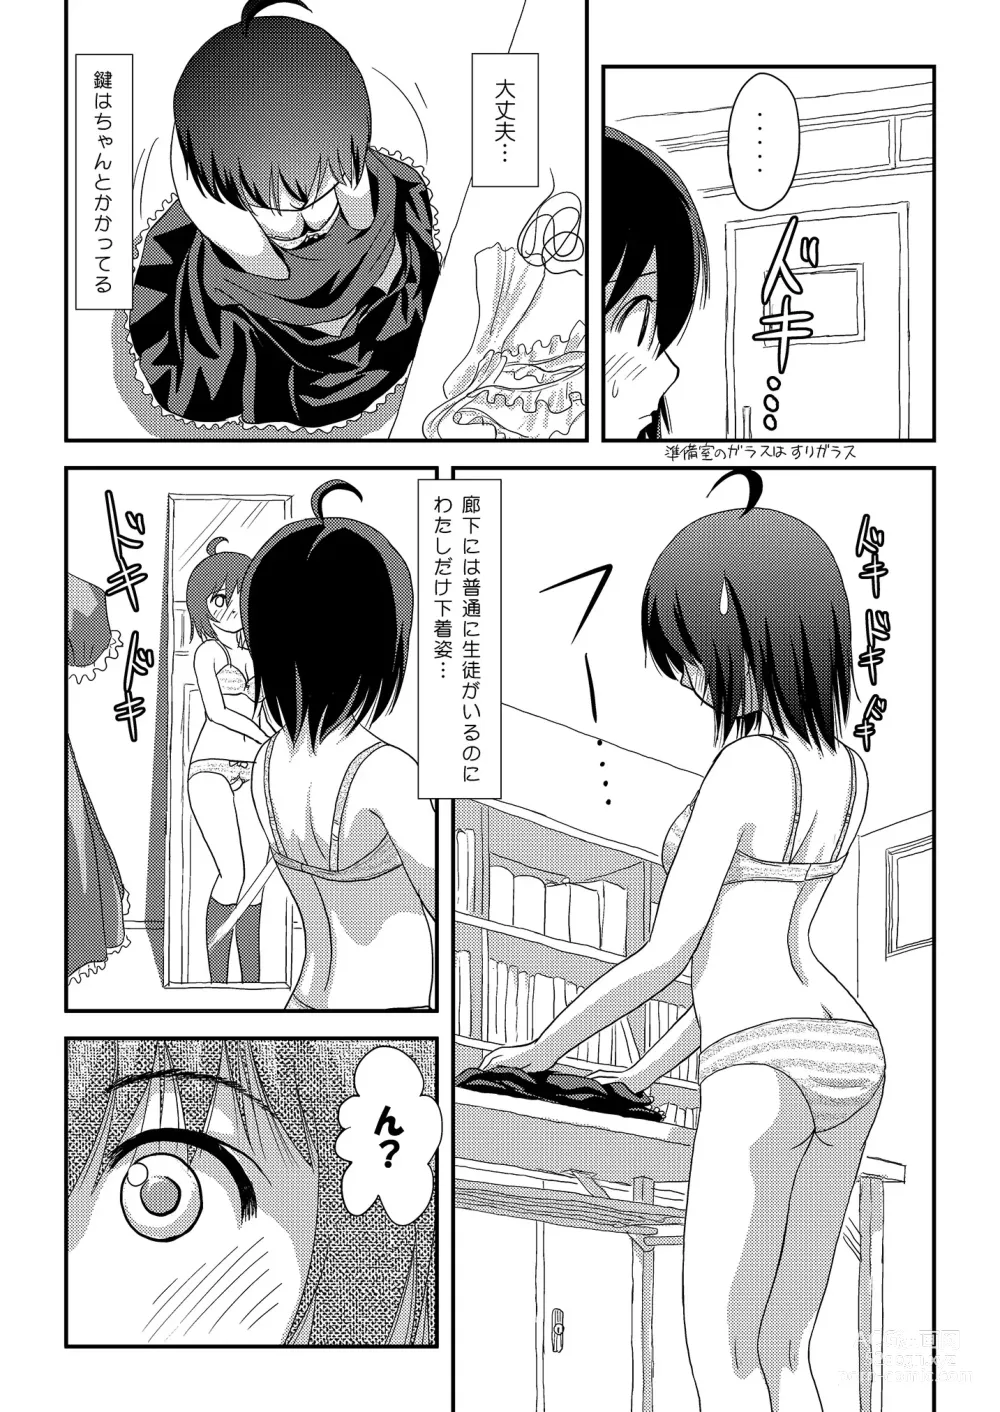 Page 8 of doujinshi Chiru Roshutsu 18